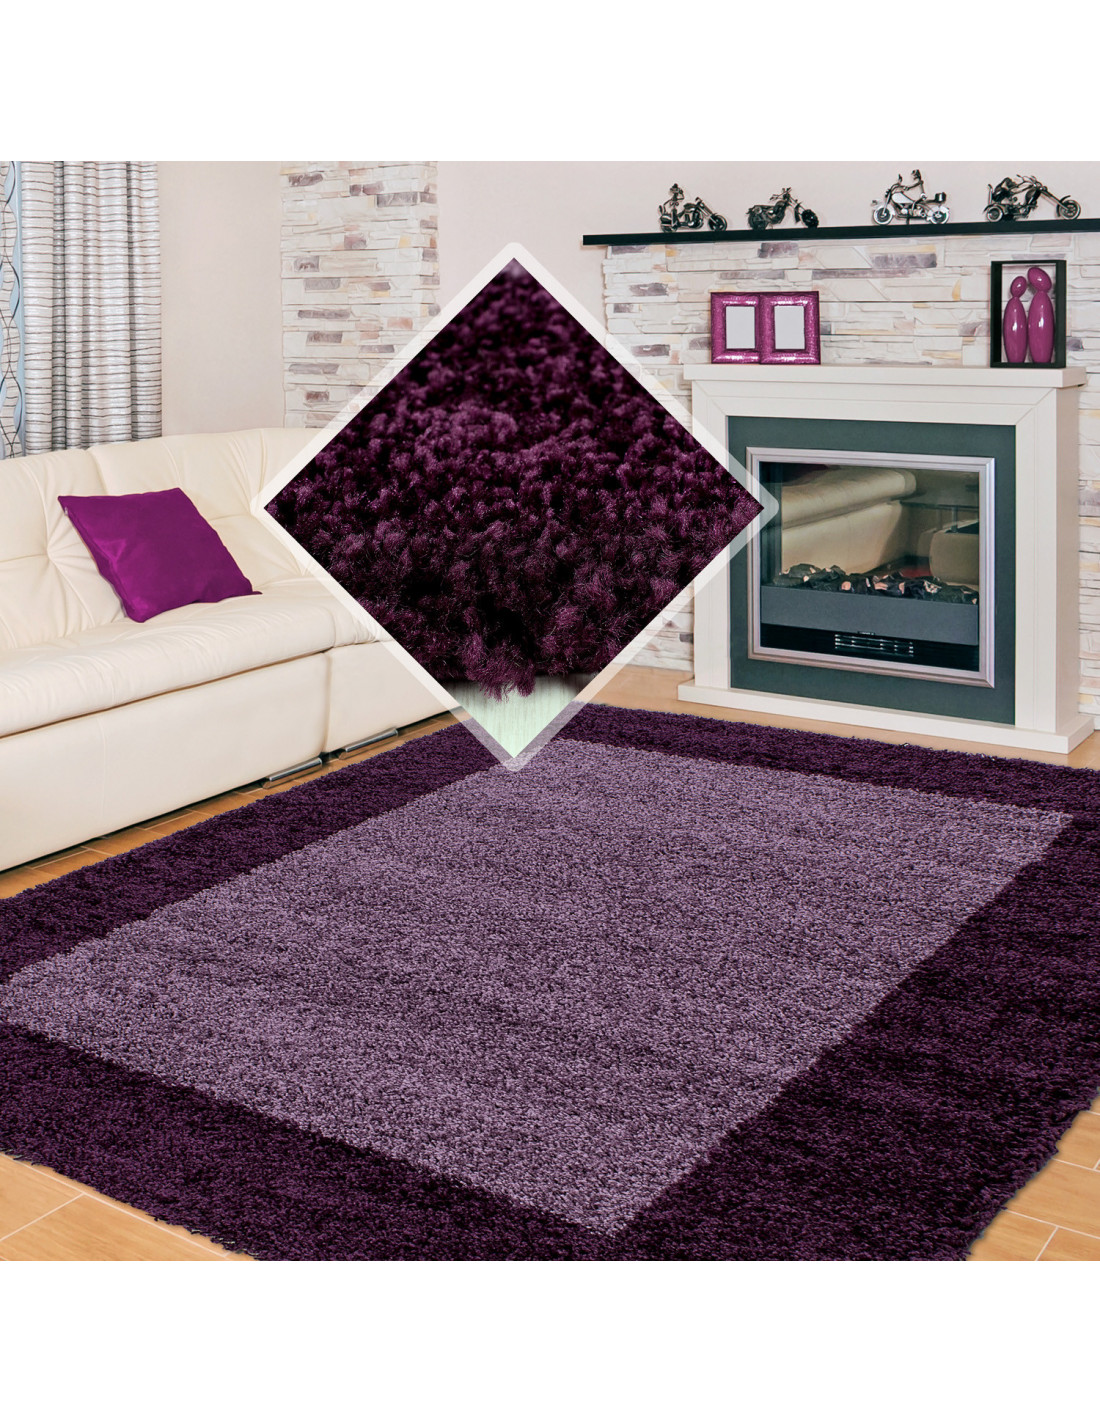 Tappeto a pelo lungo, pelo alto, pelo lungo, tappeto a pelo lungo da soggiorno, 2 colori, altezza pelo 3 cm, viola lilla